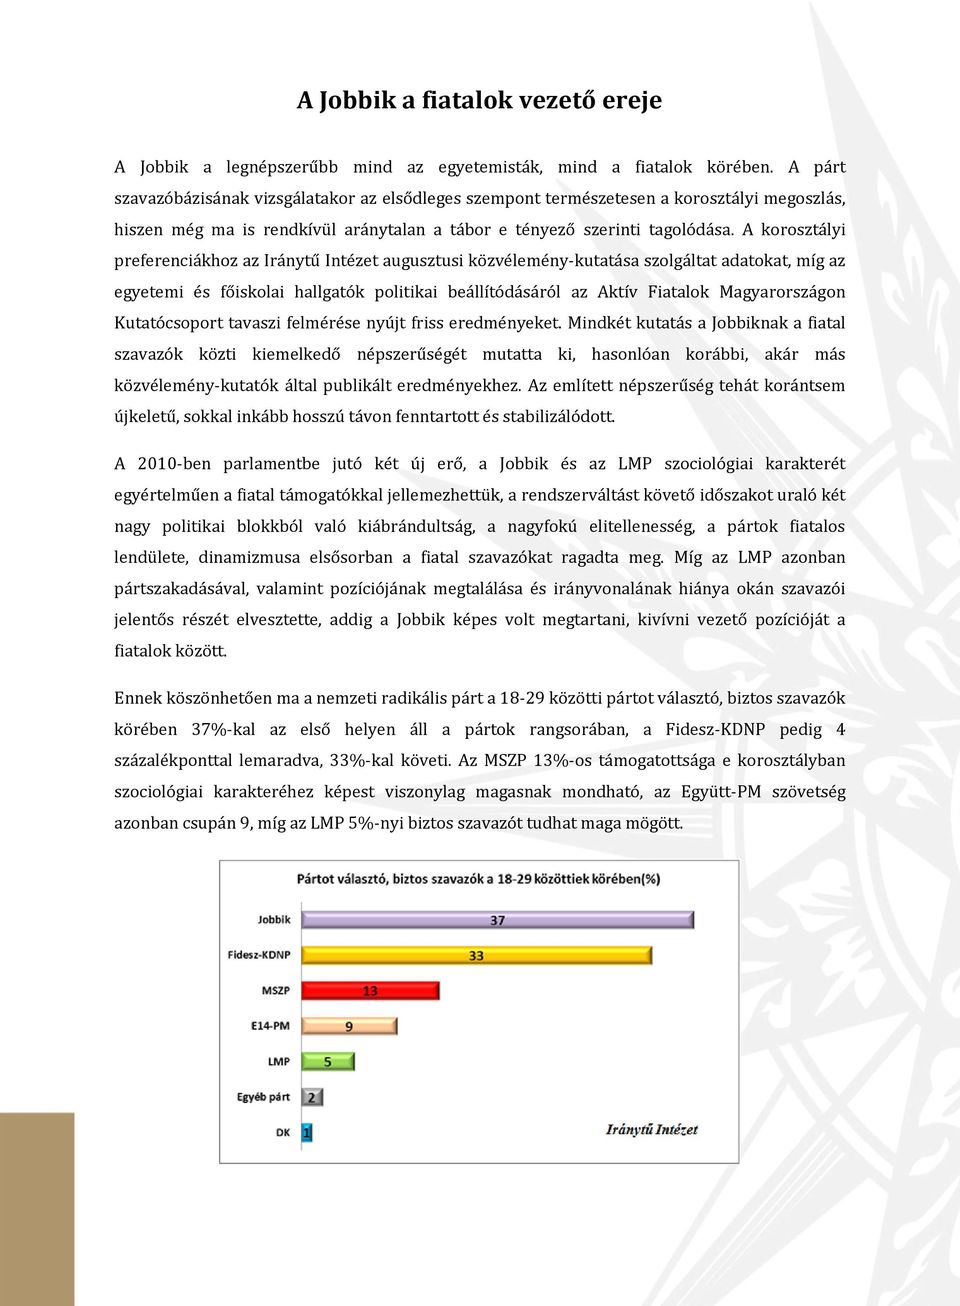 A korosztályi preferenciákhoz az Iránytű Intézet augusztusi közvélemény-kutatása szolgáltat adatokat, míg az egyetemi és főiskolai hallgatók politikai beállítódásáról az Aktív Fiatalok Magyarországon